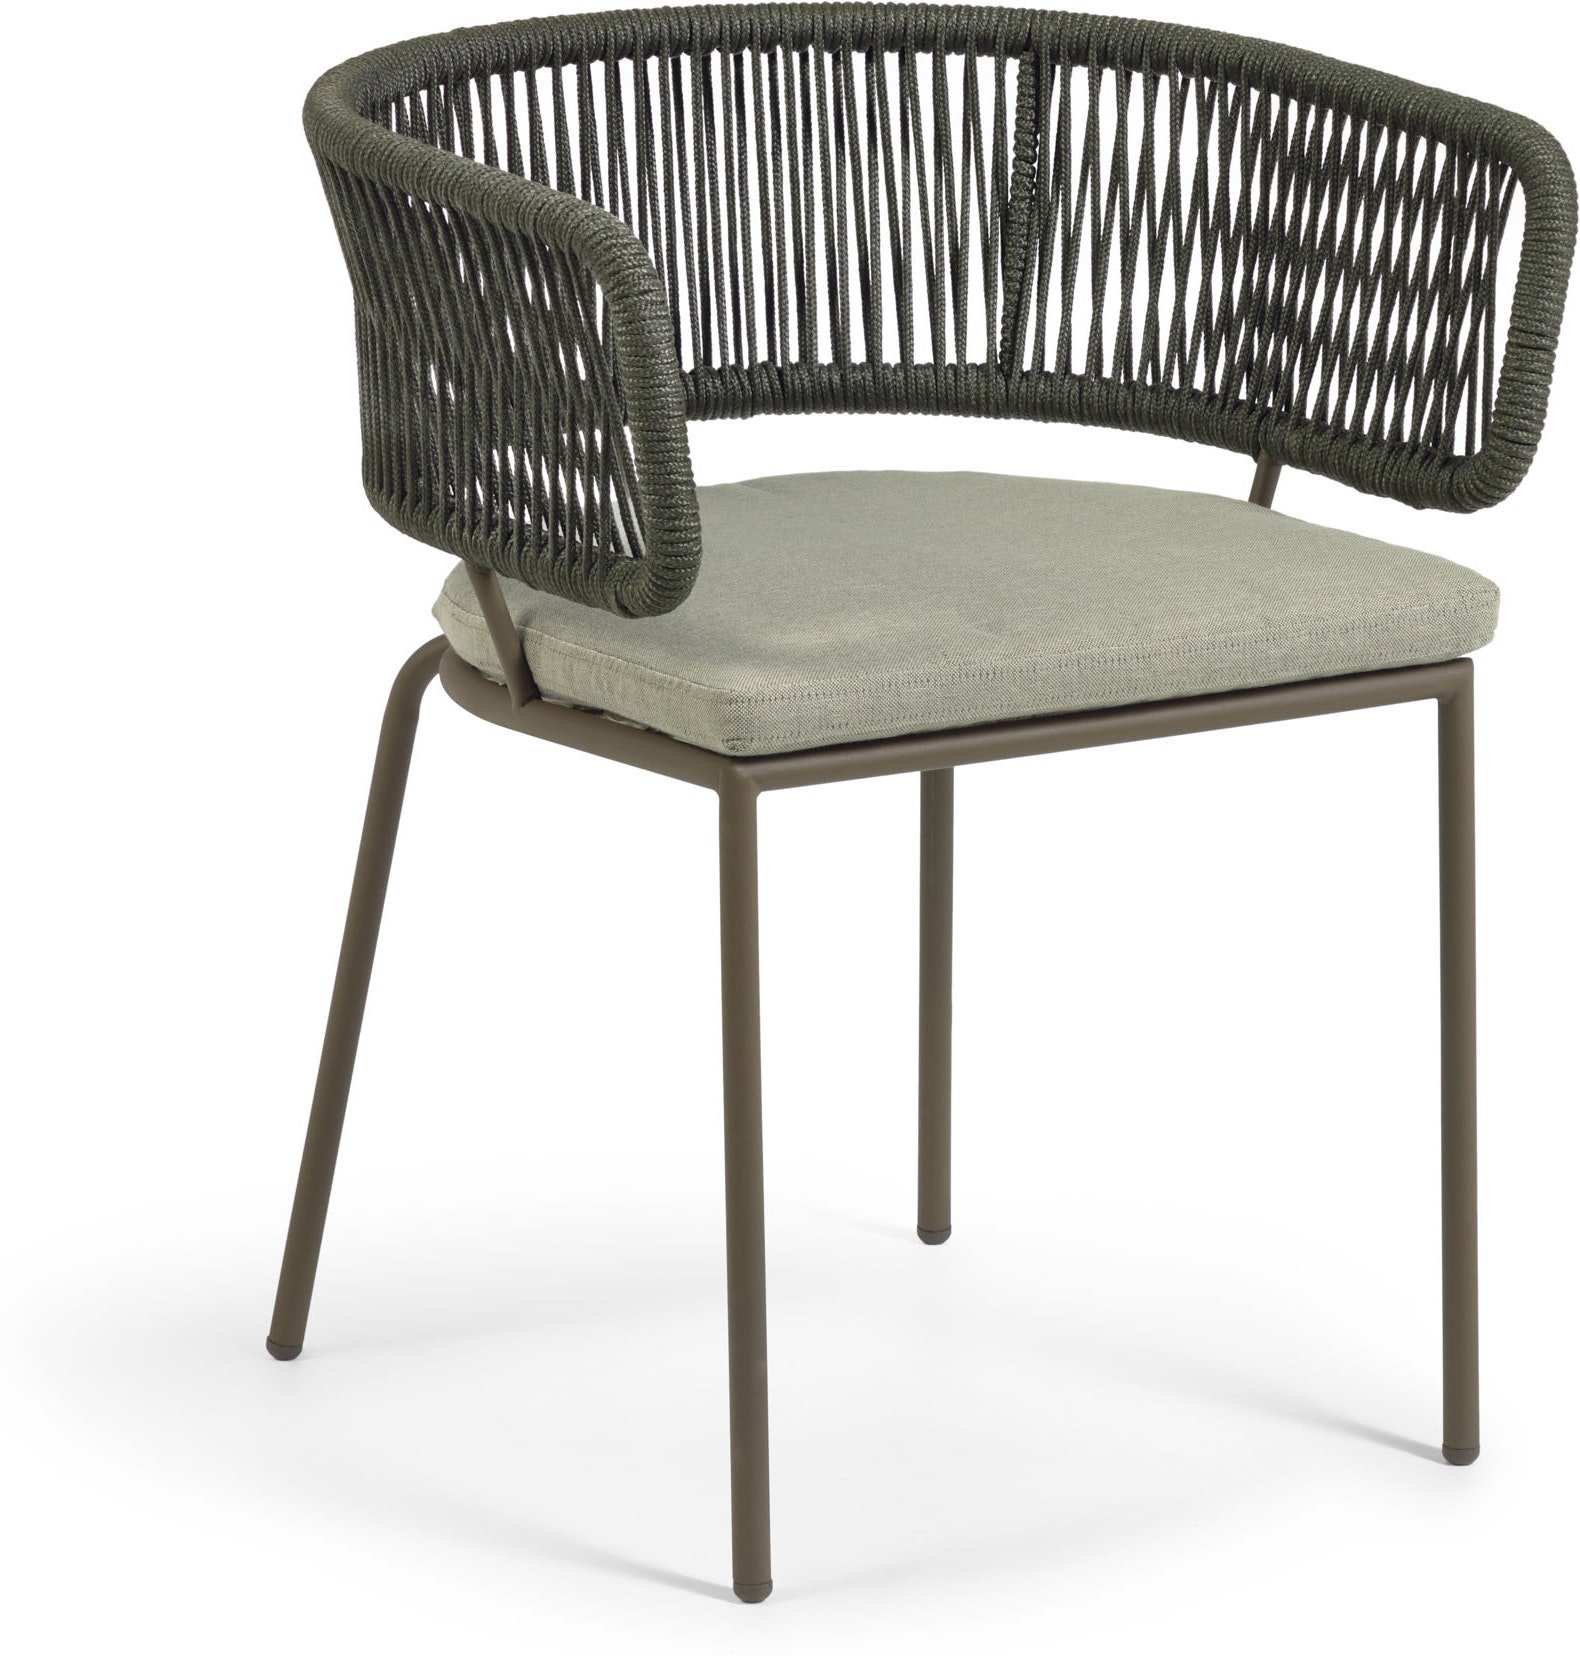 5: Nadin, Udendørs spisebordsstol by LaForma (H: 73 cm. x B: 58 cm. x L: 55 cm., Grøn)